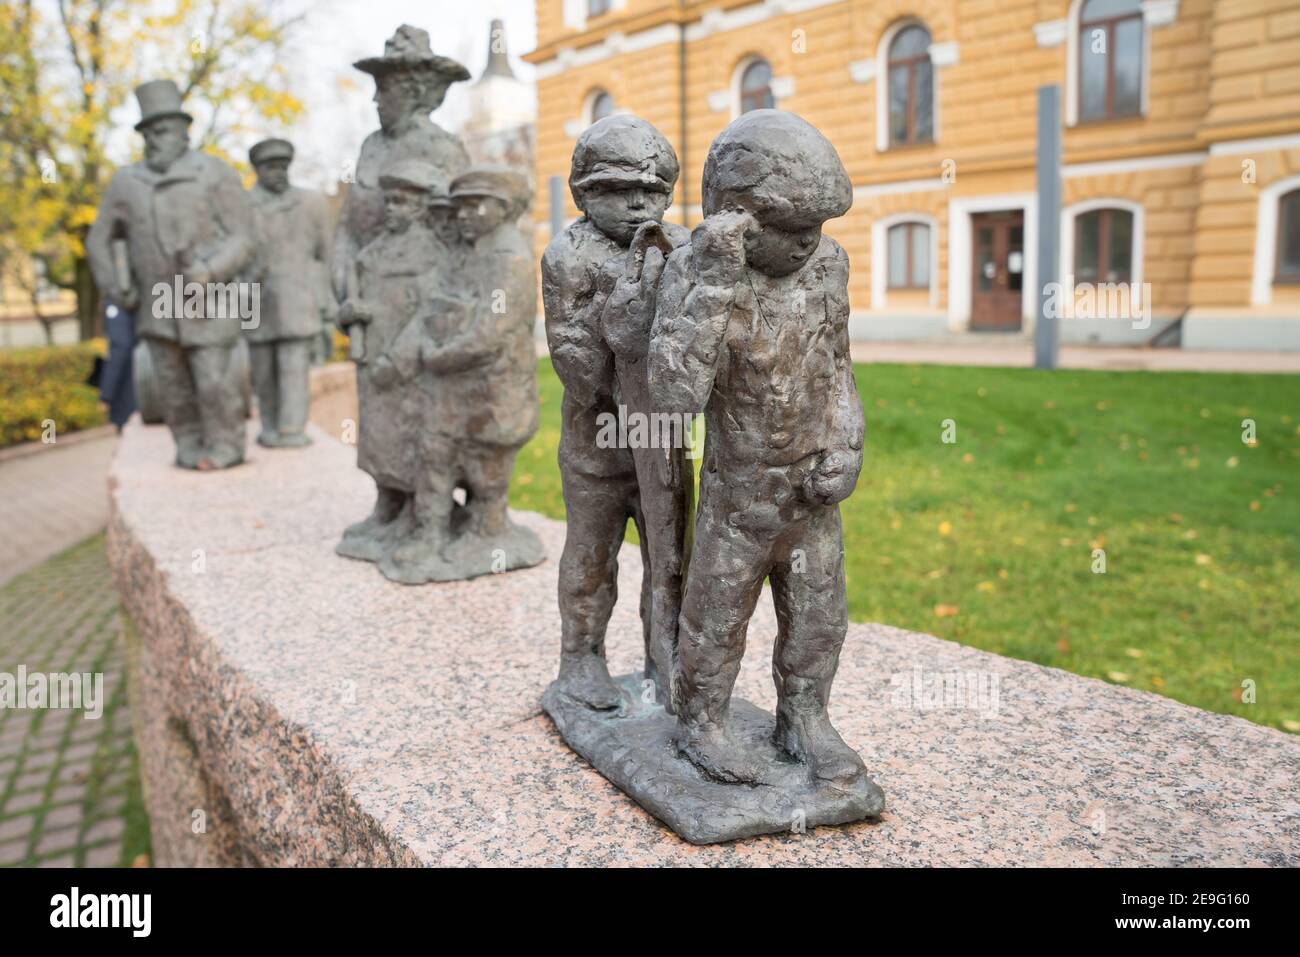 OULU, FINLANDE - 12 octobre 2020 : gros plan de la sculpture en bronze « passage du temps » de Sanna Koivisto dans le parc Maria Silfvan. Deux garçons de finition traditionnelle Banque D'Images